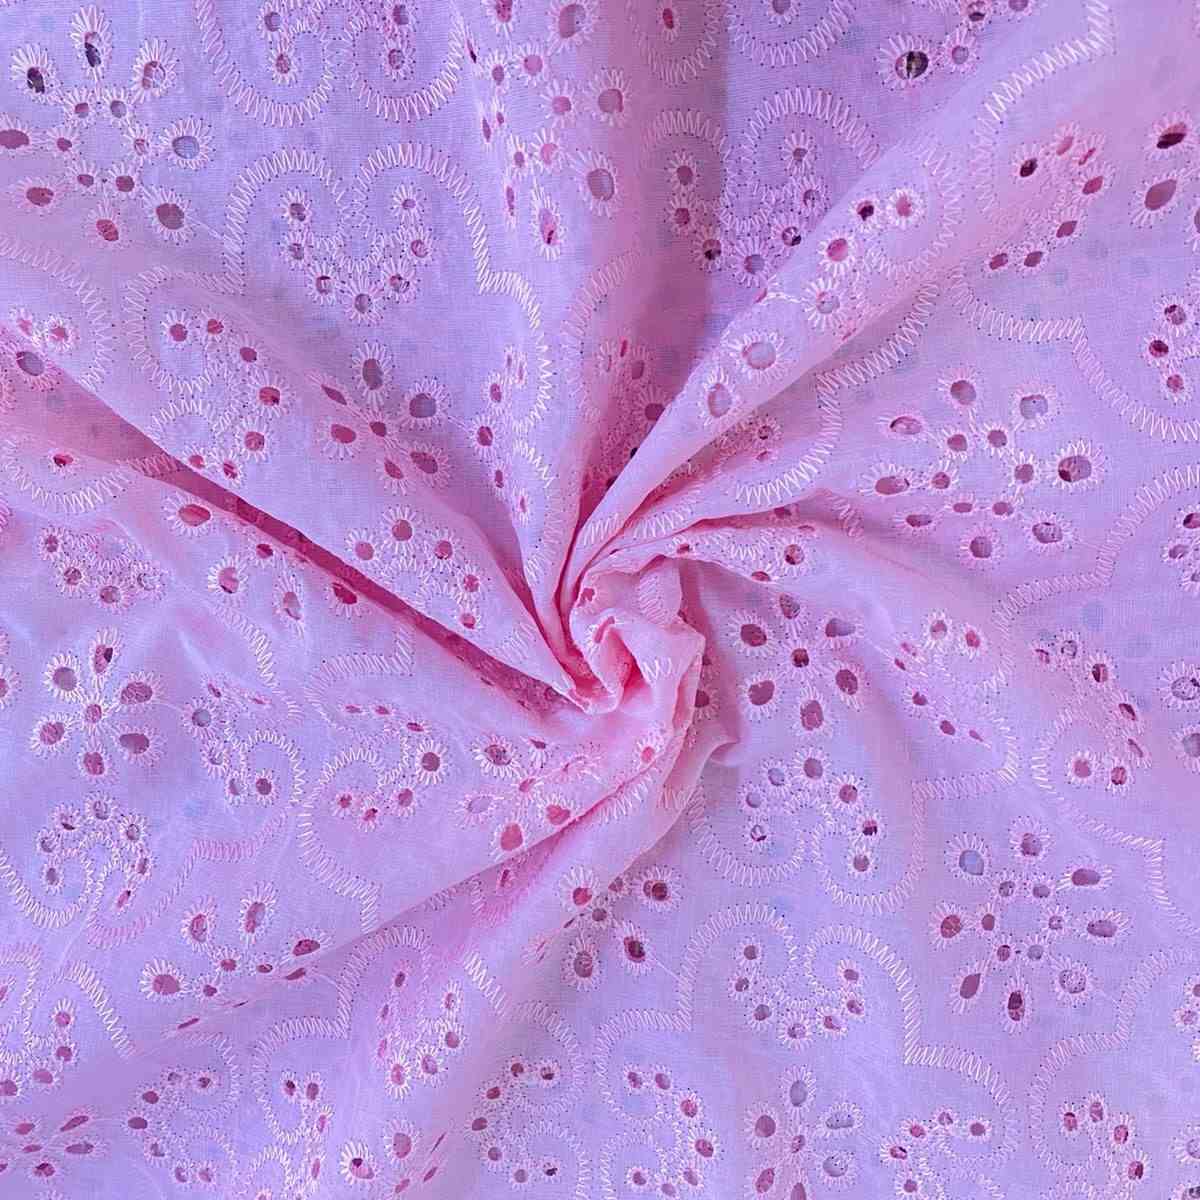 Tecido Laise Bordada Arabesco Rosa Claro - Empório dos Tecidos 